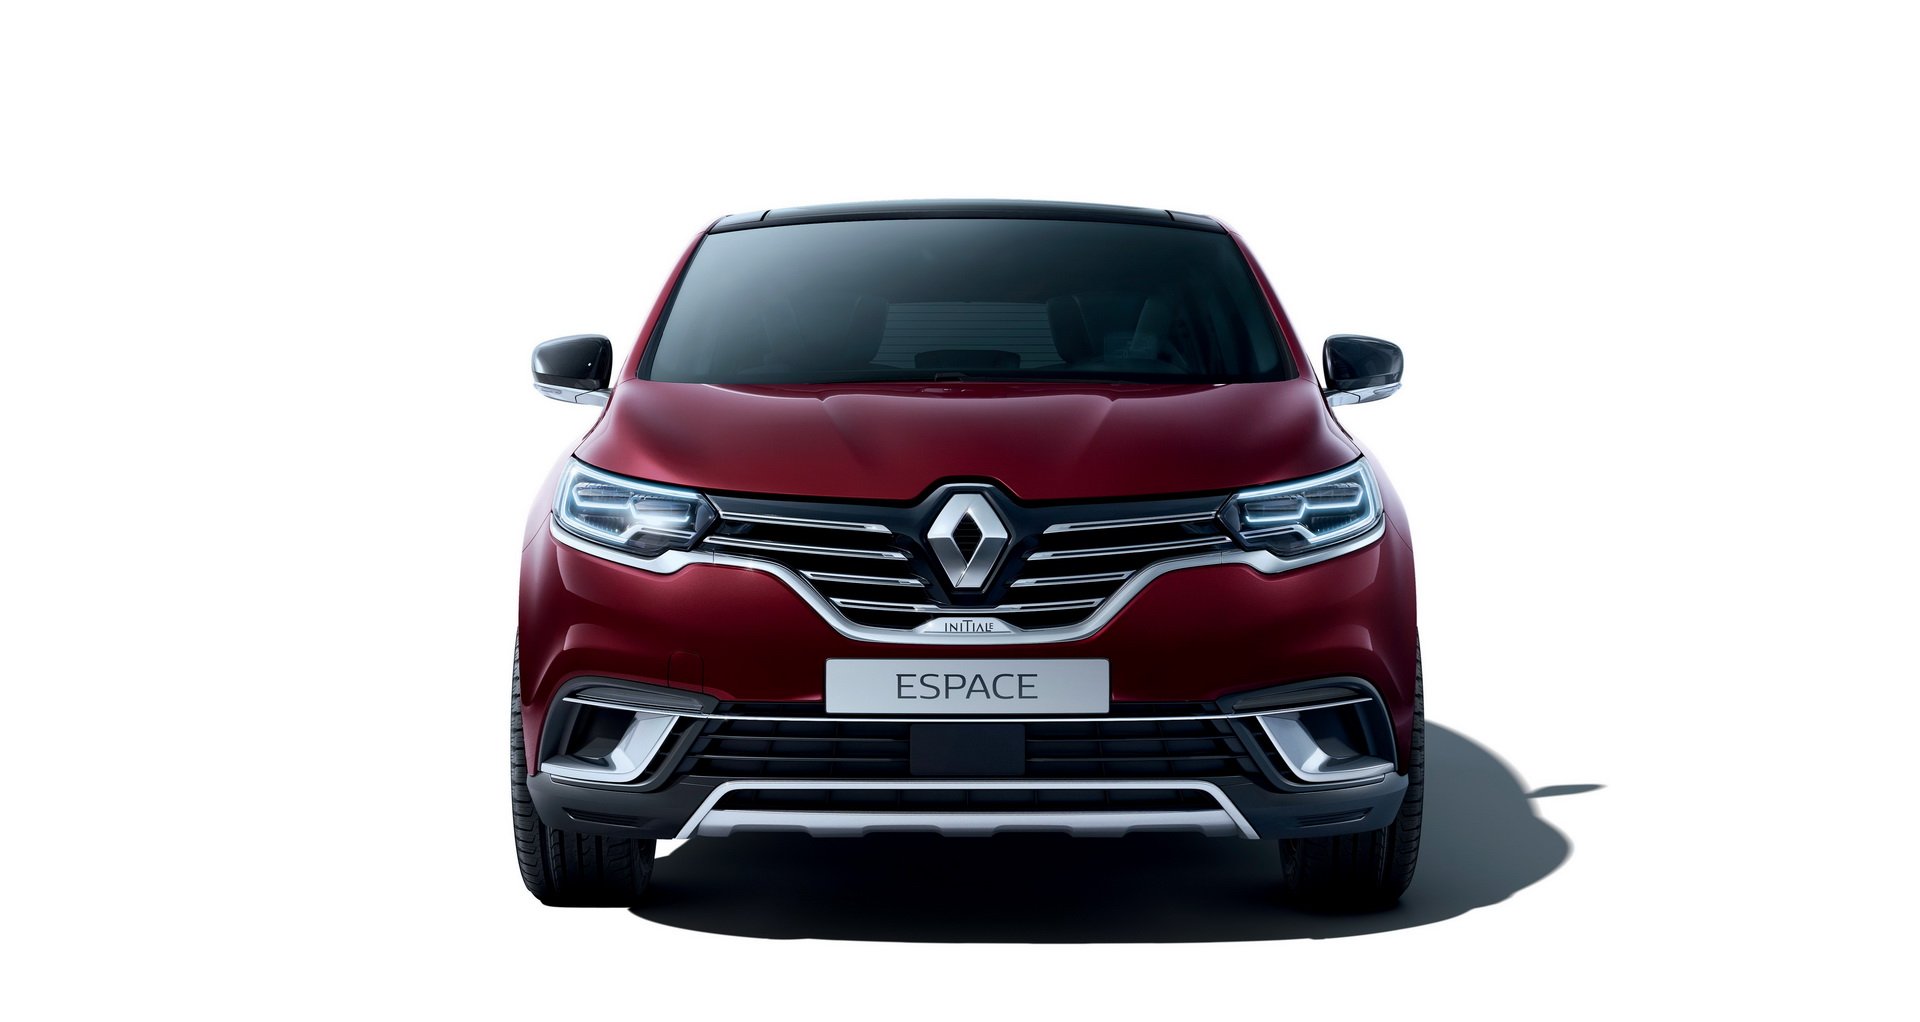 2020 Renault Espace, yeni teknolojileriyle tanıtıldı